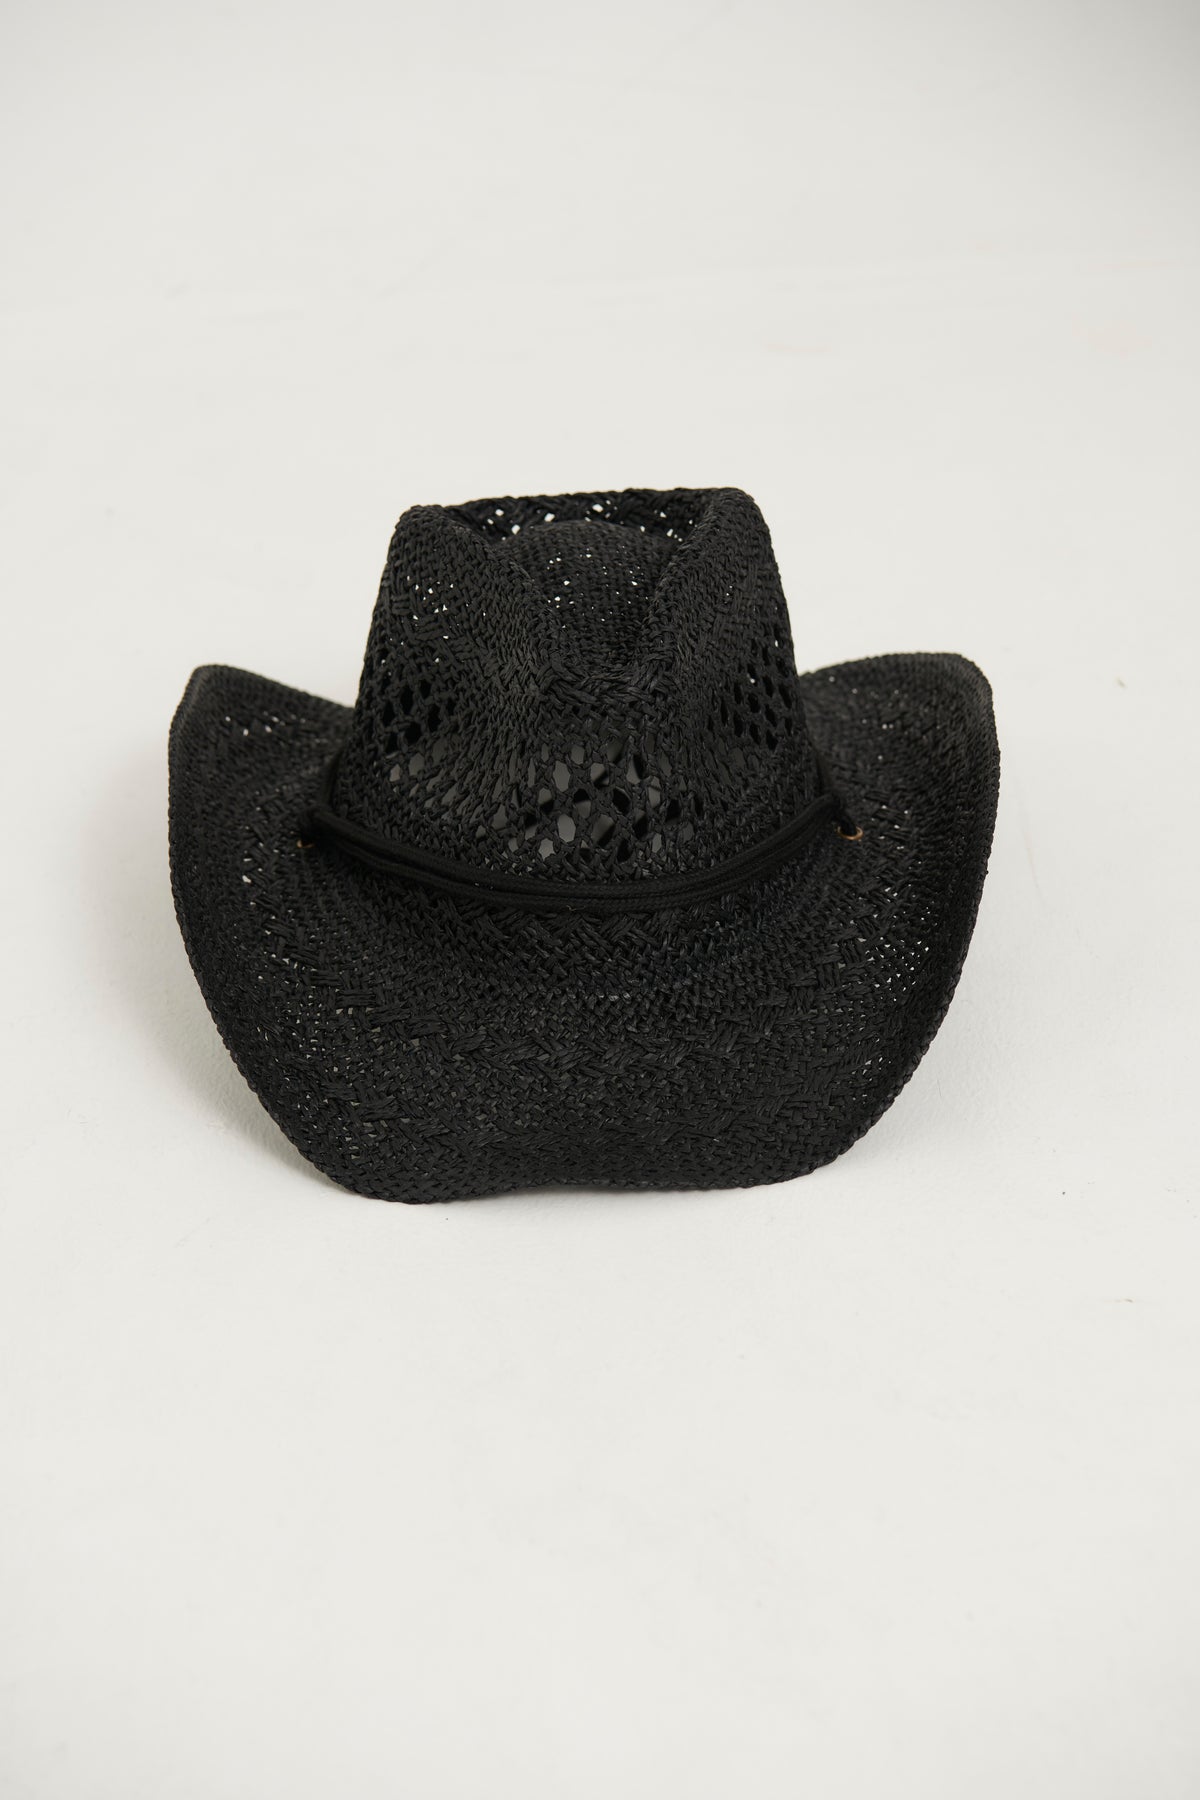 Western Festival Straw String Hat Black